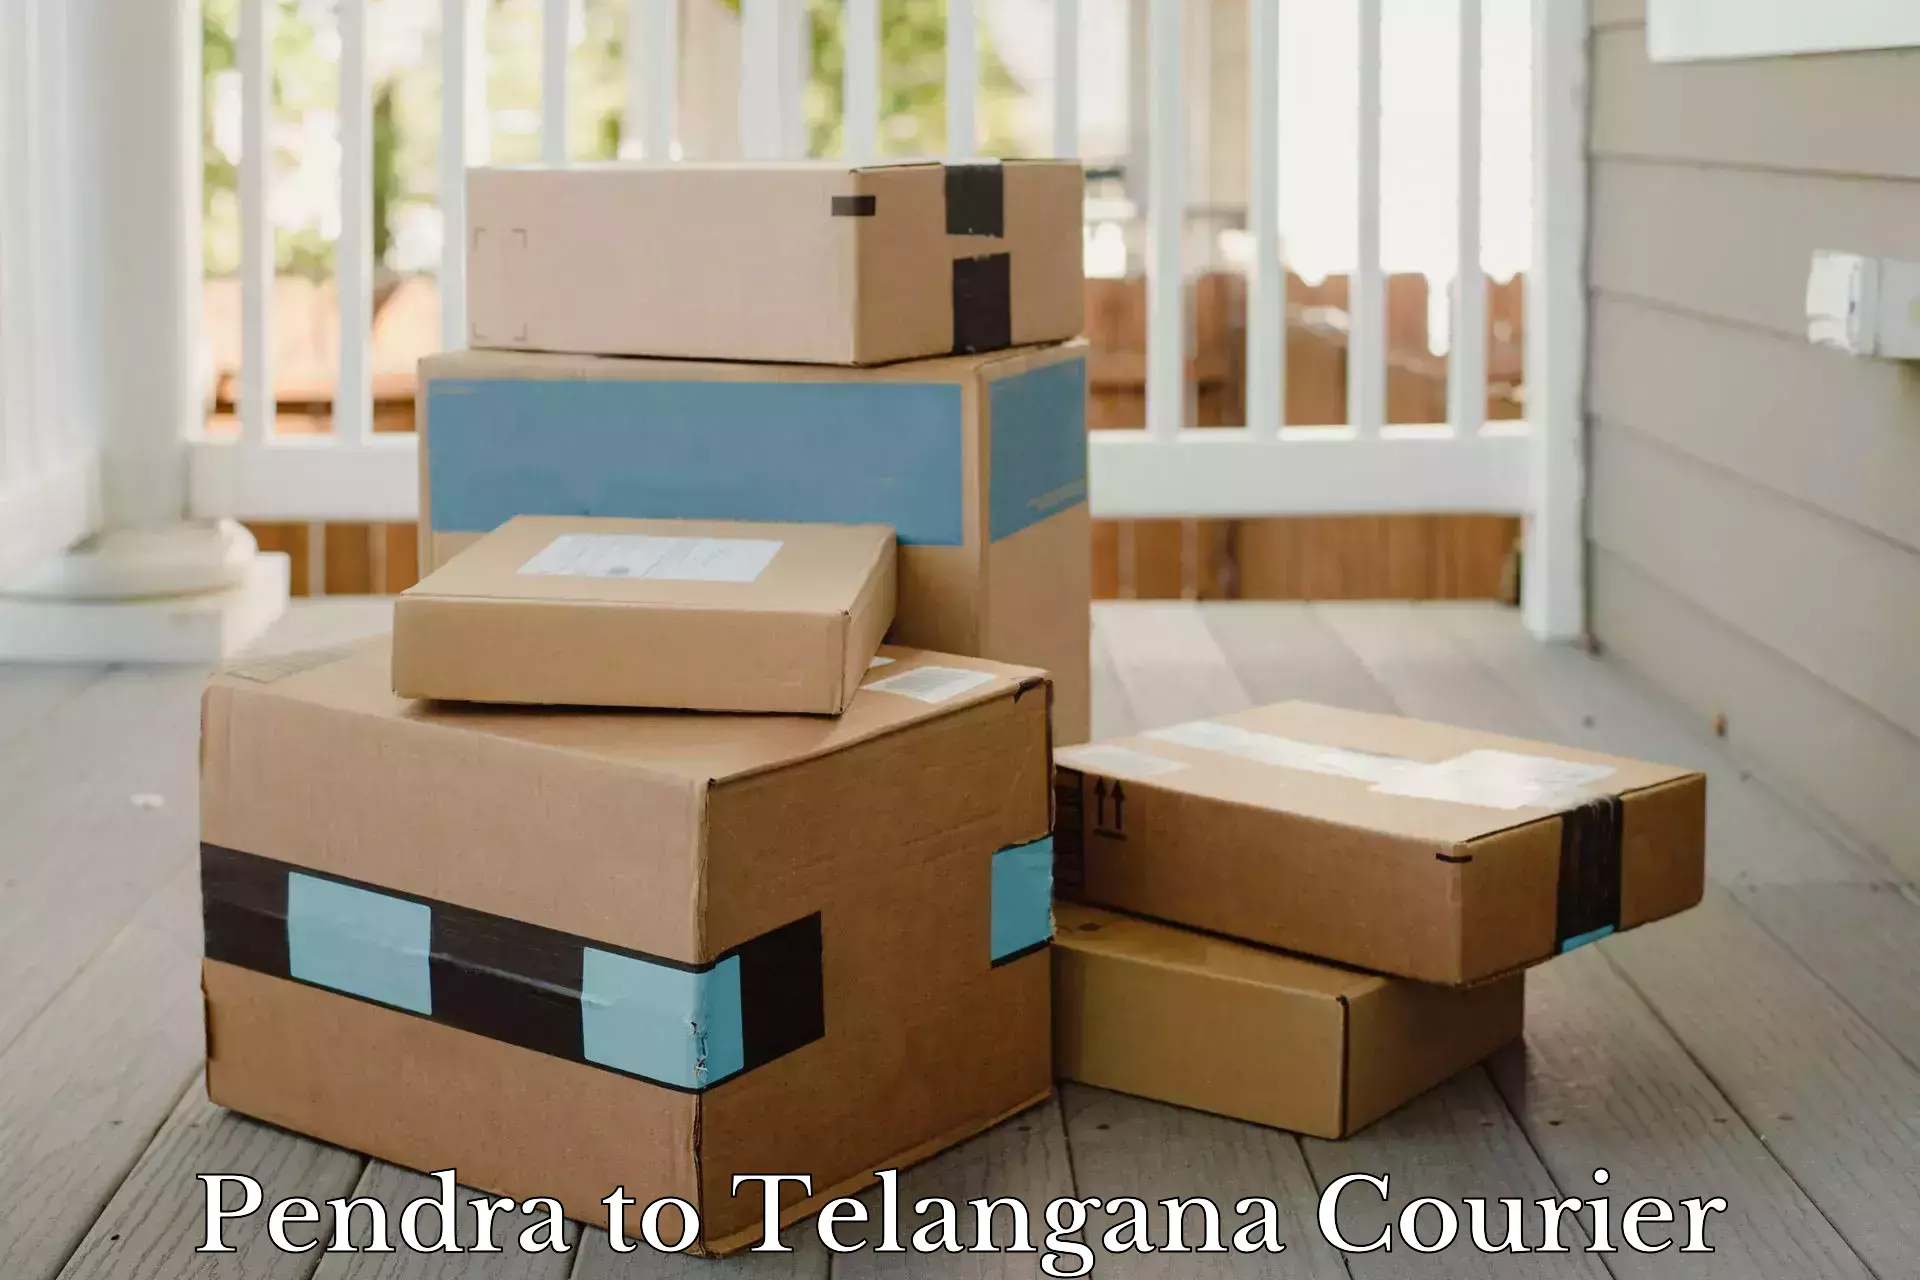 Enhanced tracking features Pendra to Telangana